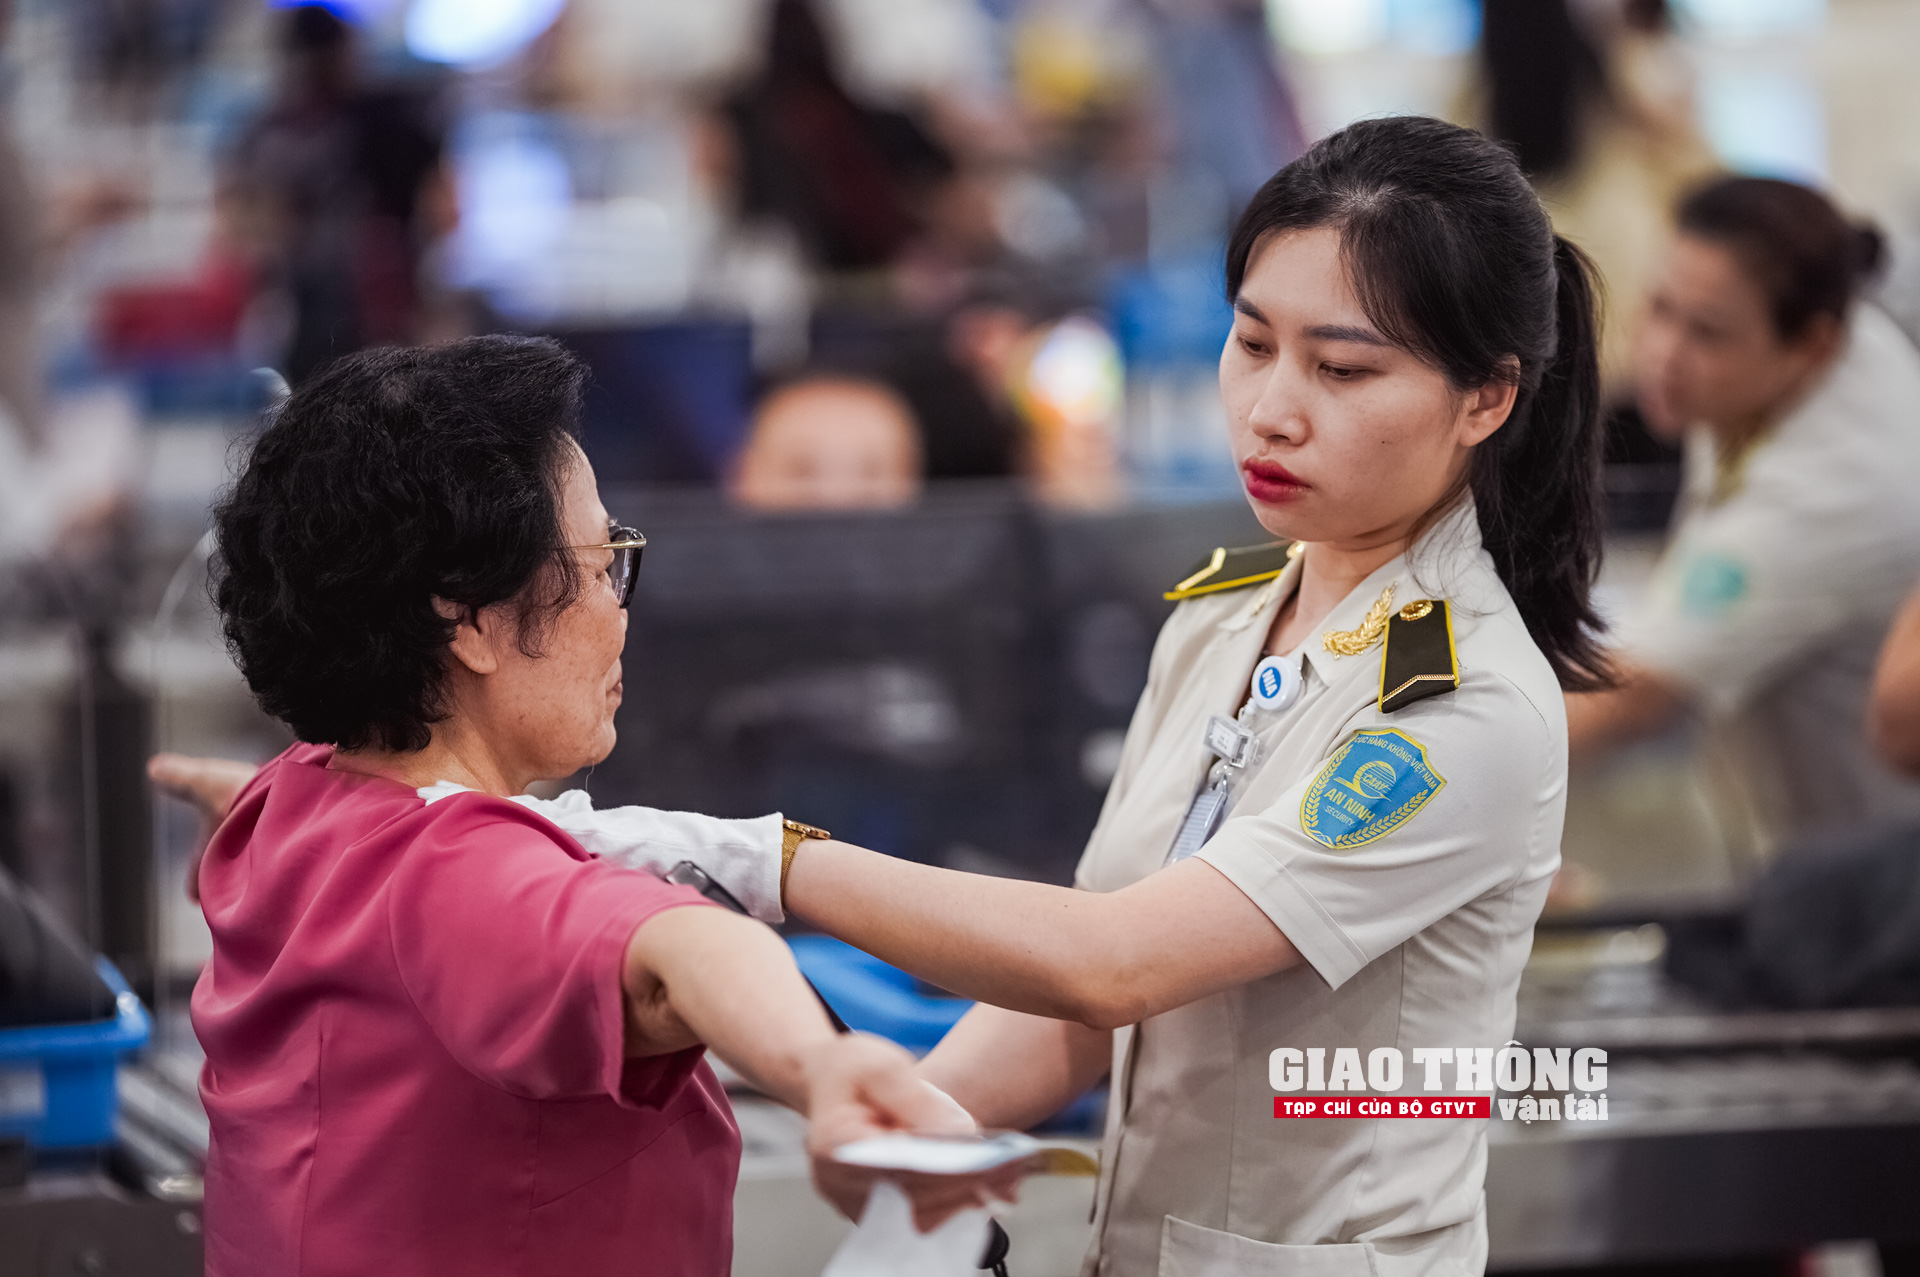 Cận cảnh ngày cao điểm nhất tại sân bay Nội Bài dịp nghỉ Lễ 30/4 - 1/5- Ảnh 23.